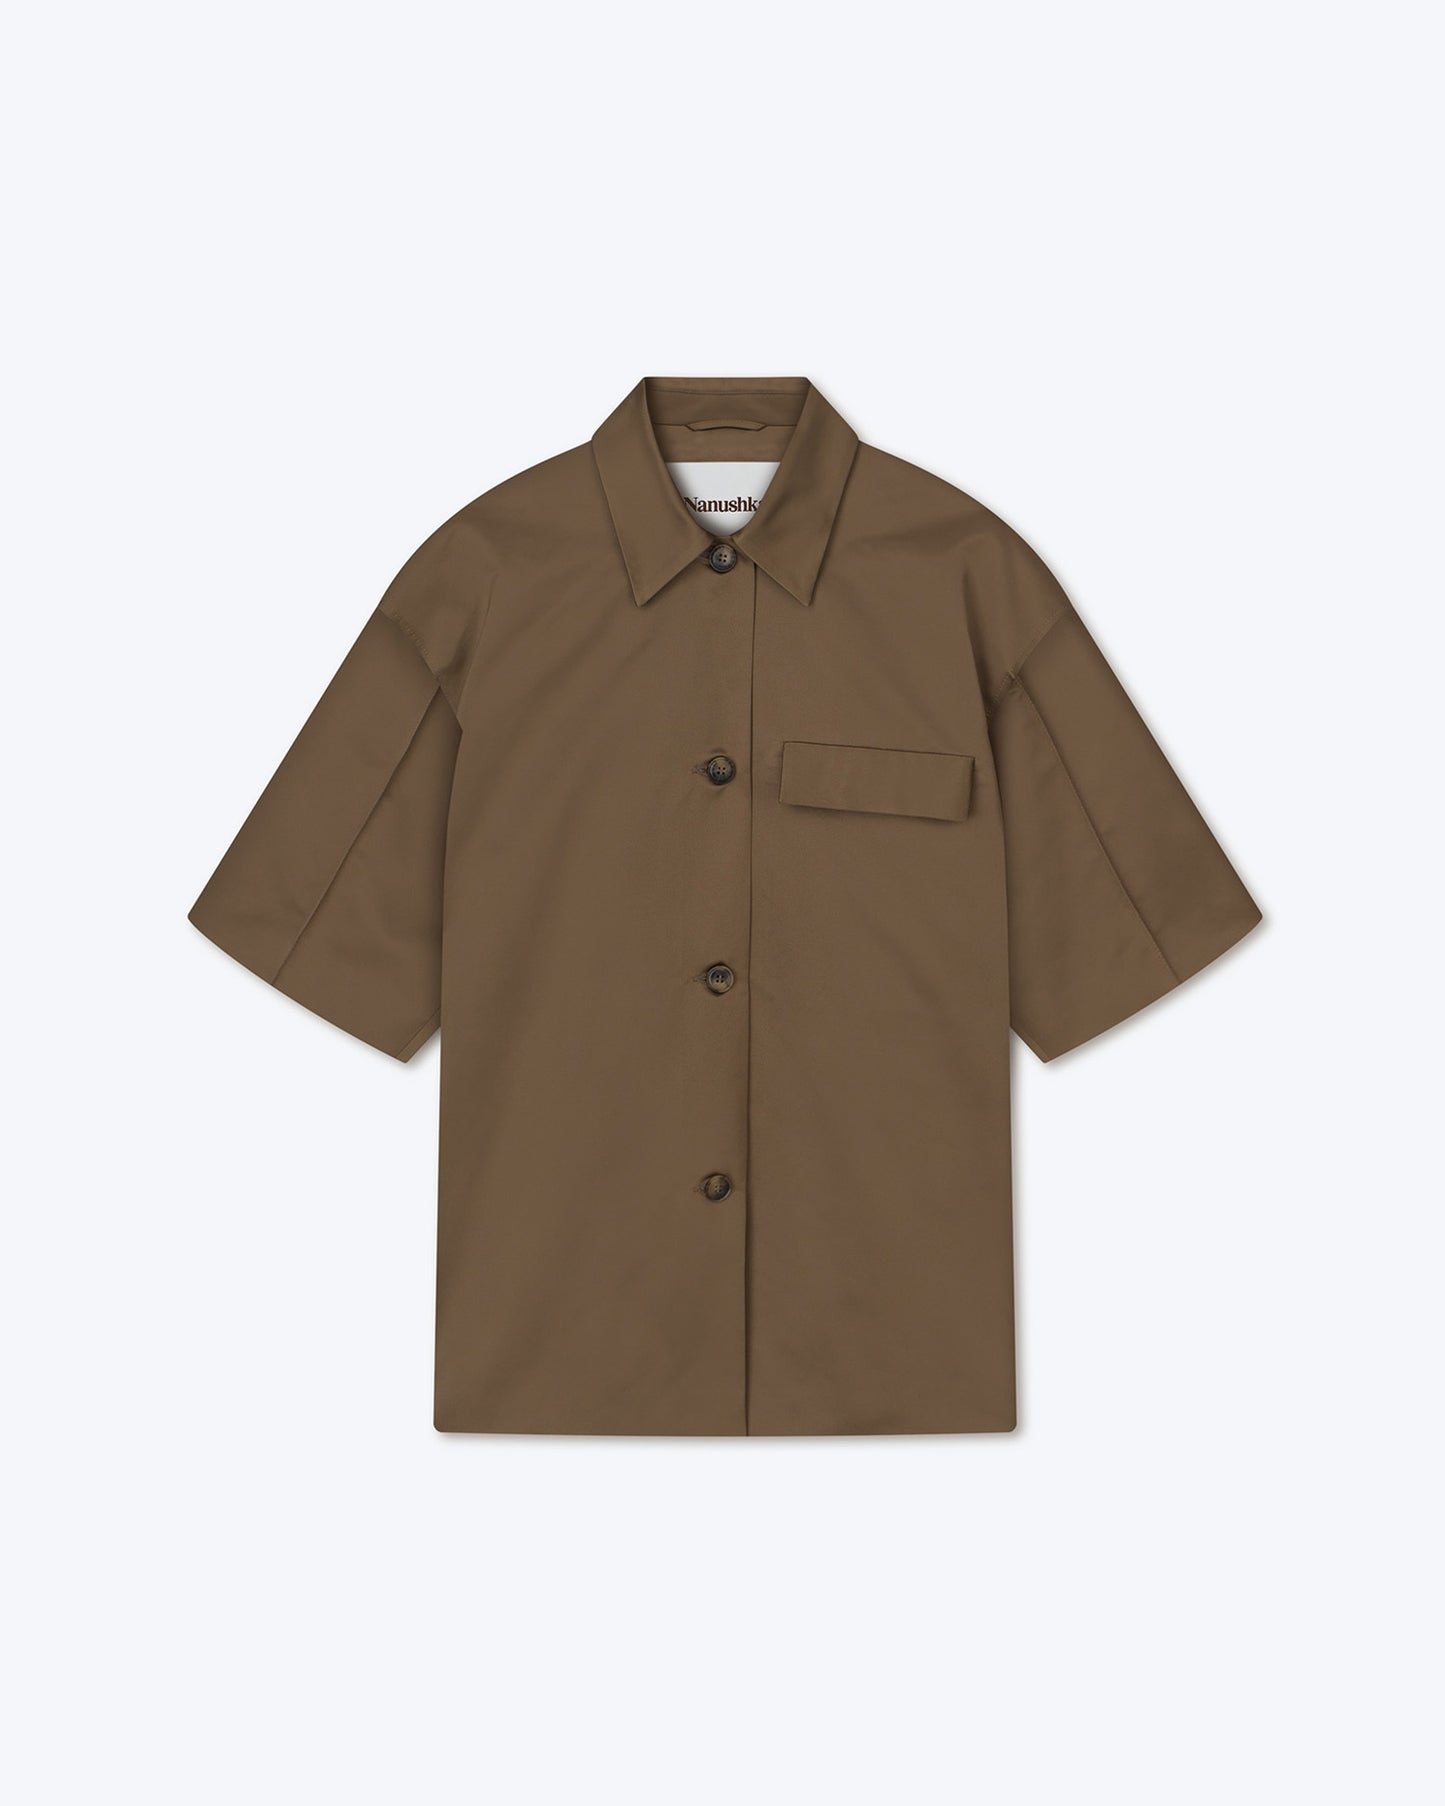 Maissa - Structured Shirt - Fossil Brown